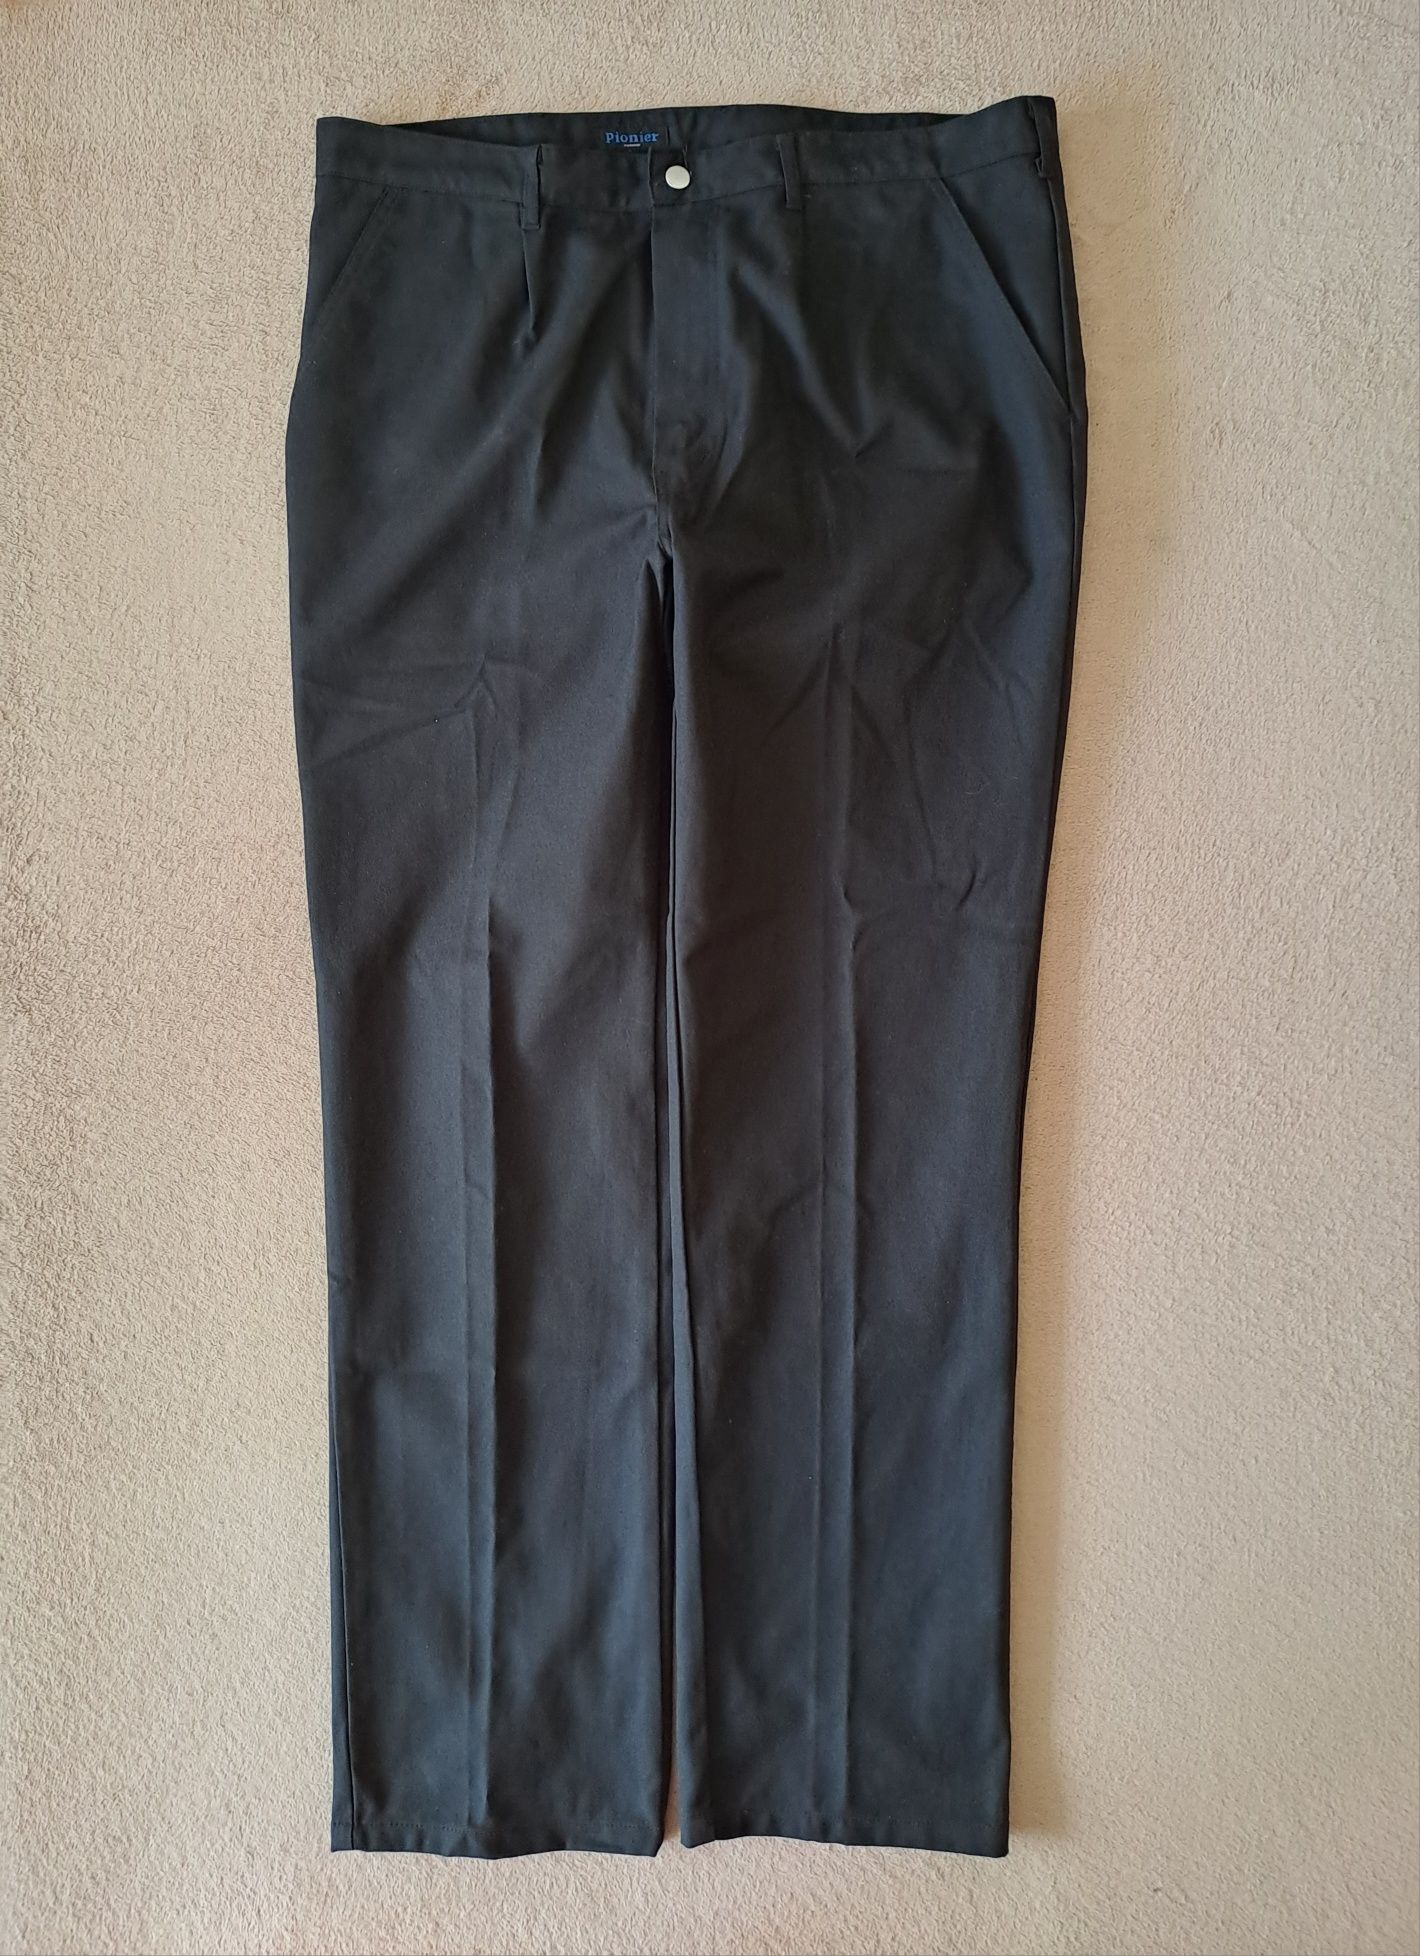 NOWE spodnie robocze PIONIER roz. 54 XL/XXL workwear BHP styl komfort